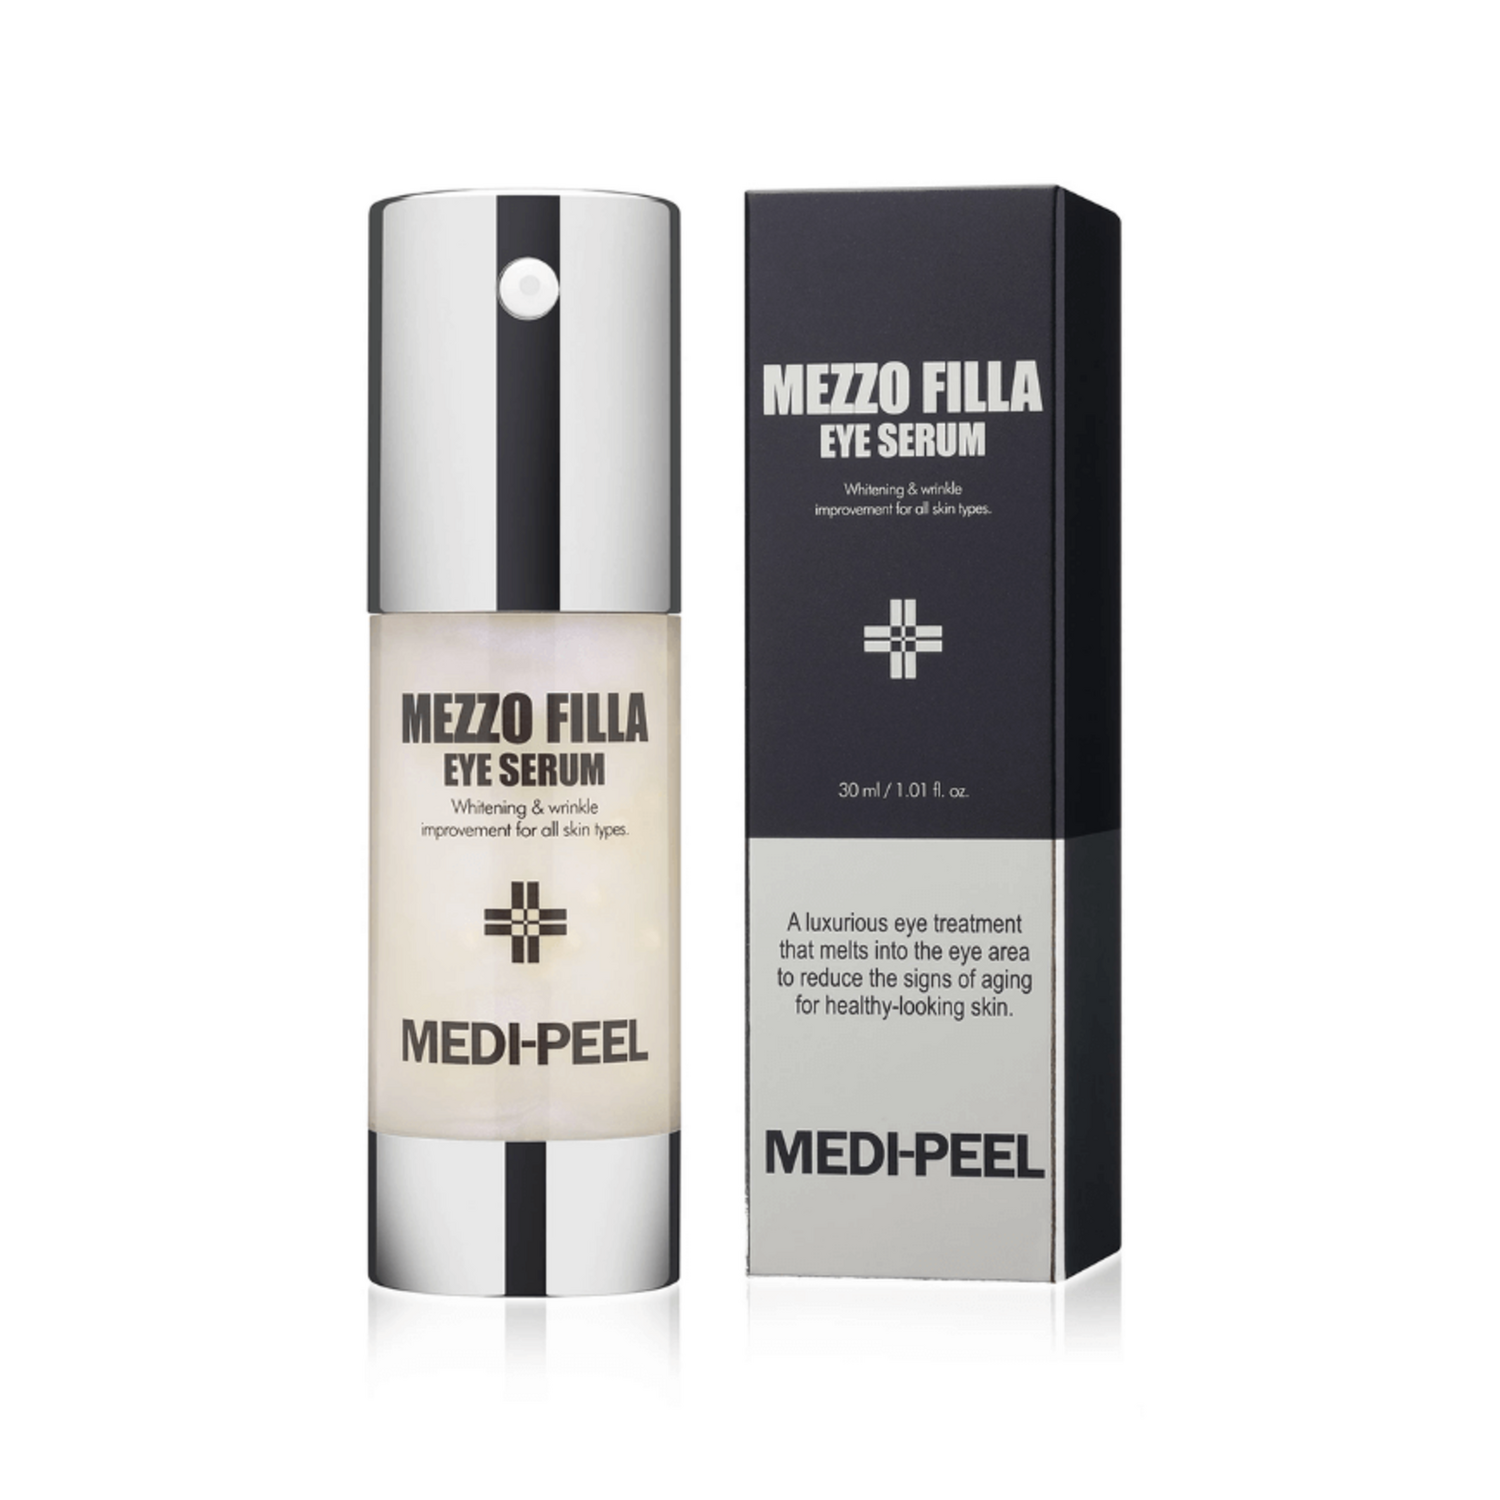 Medi-Peel Mezzo Filla Eye Serum Омолаживающая пептидная сыворотка для век, 30мл. / 343020 (4Т)